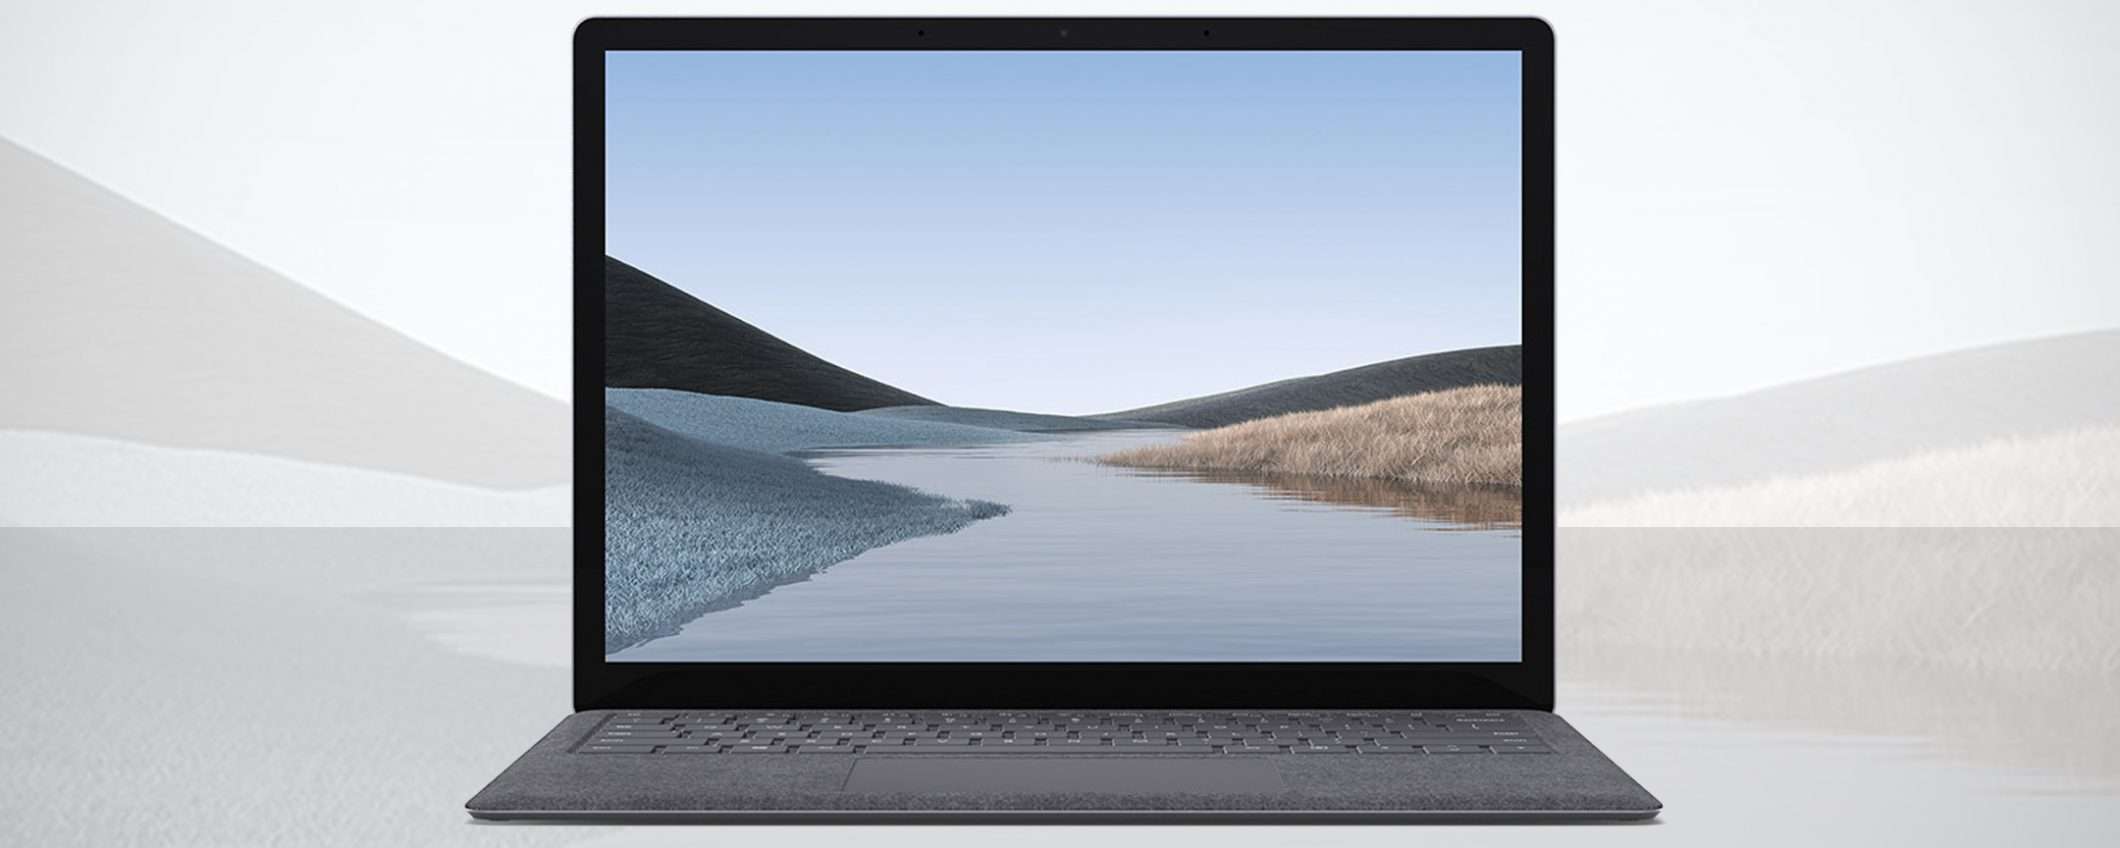 Surface Laptop 3 di Microsoft in offerta a € 899